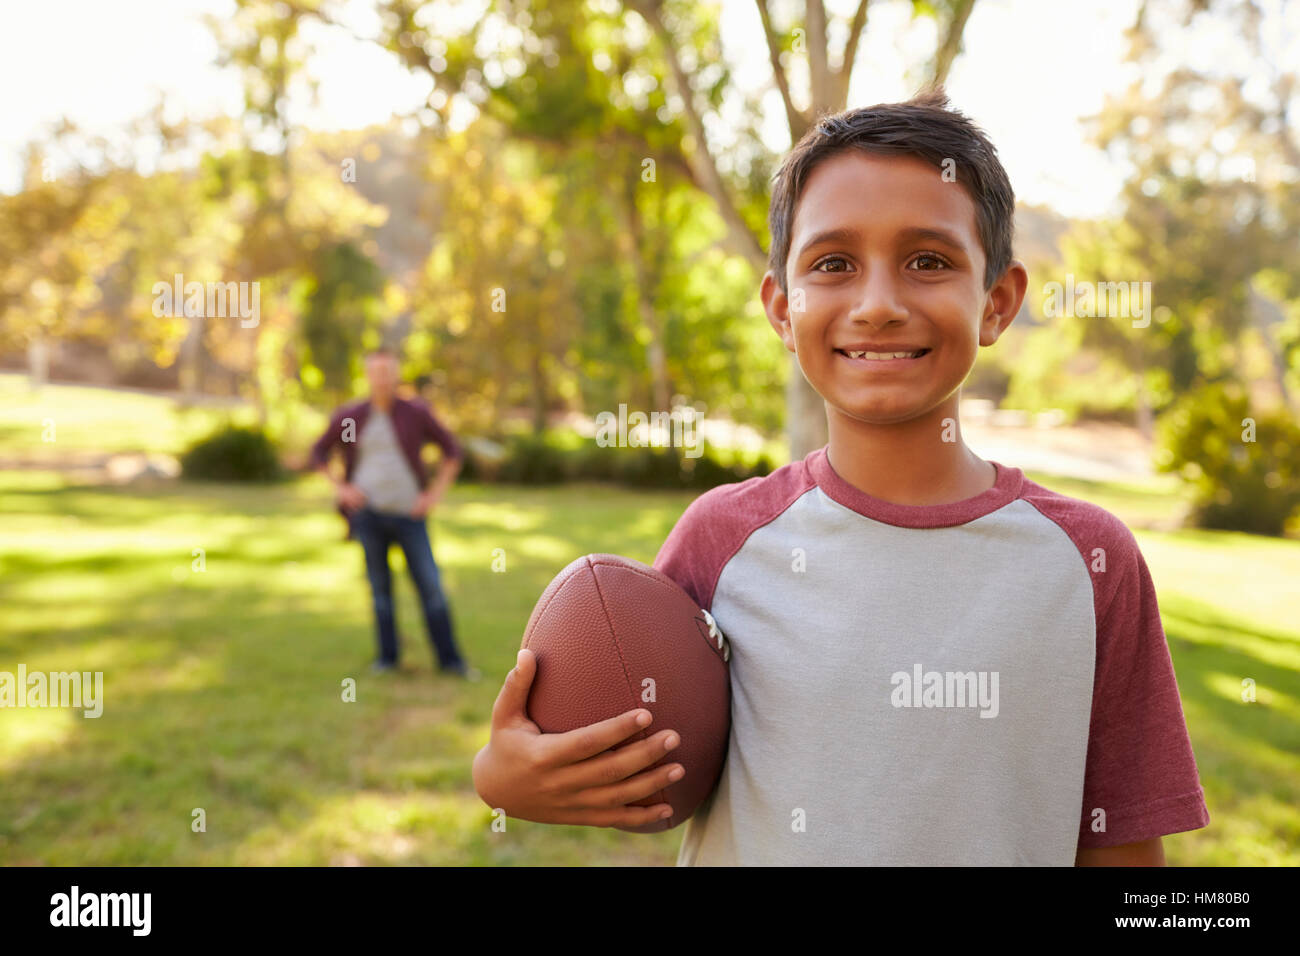 Ritratto di ragazzo tenendo il calcio nel parco, papà in background Foto Stock